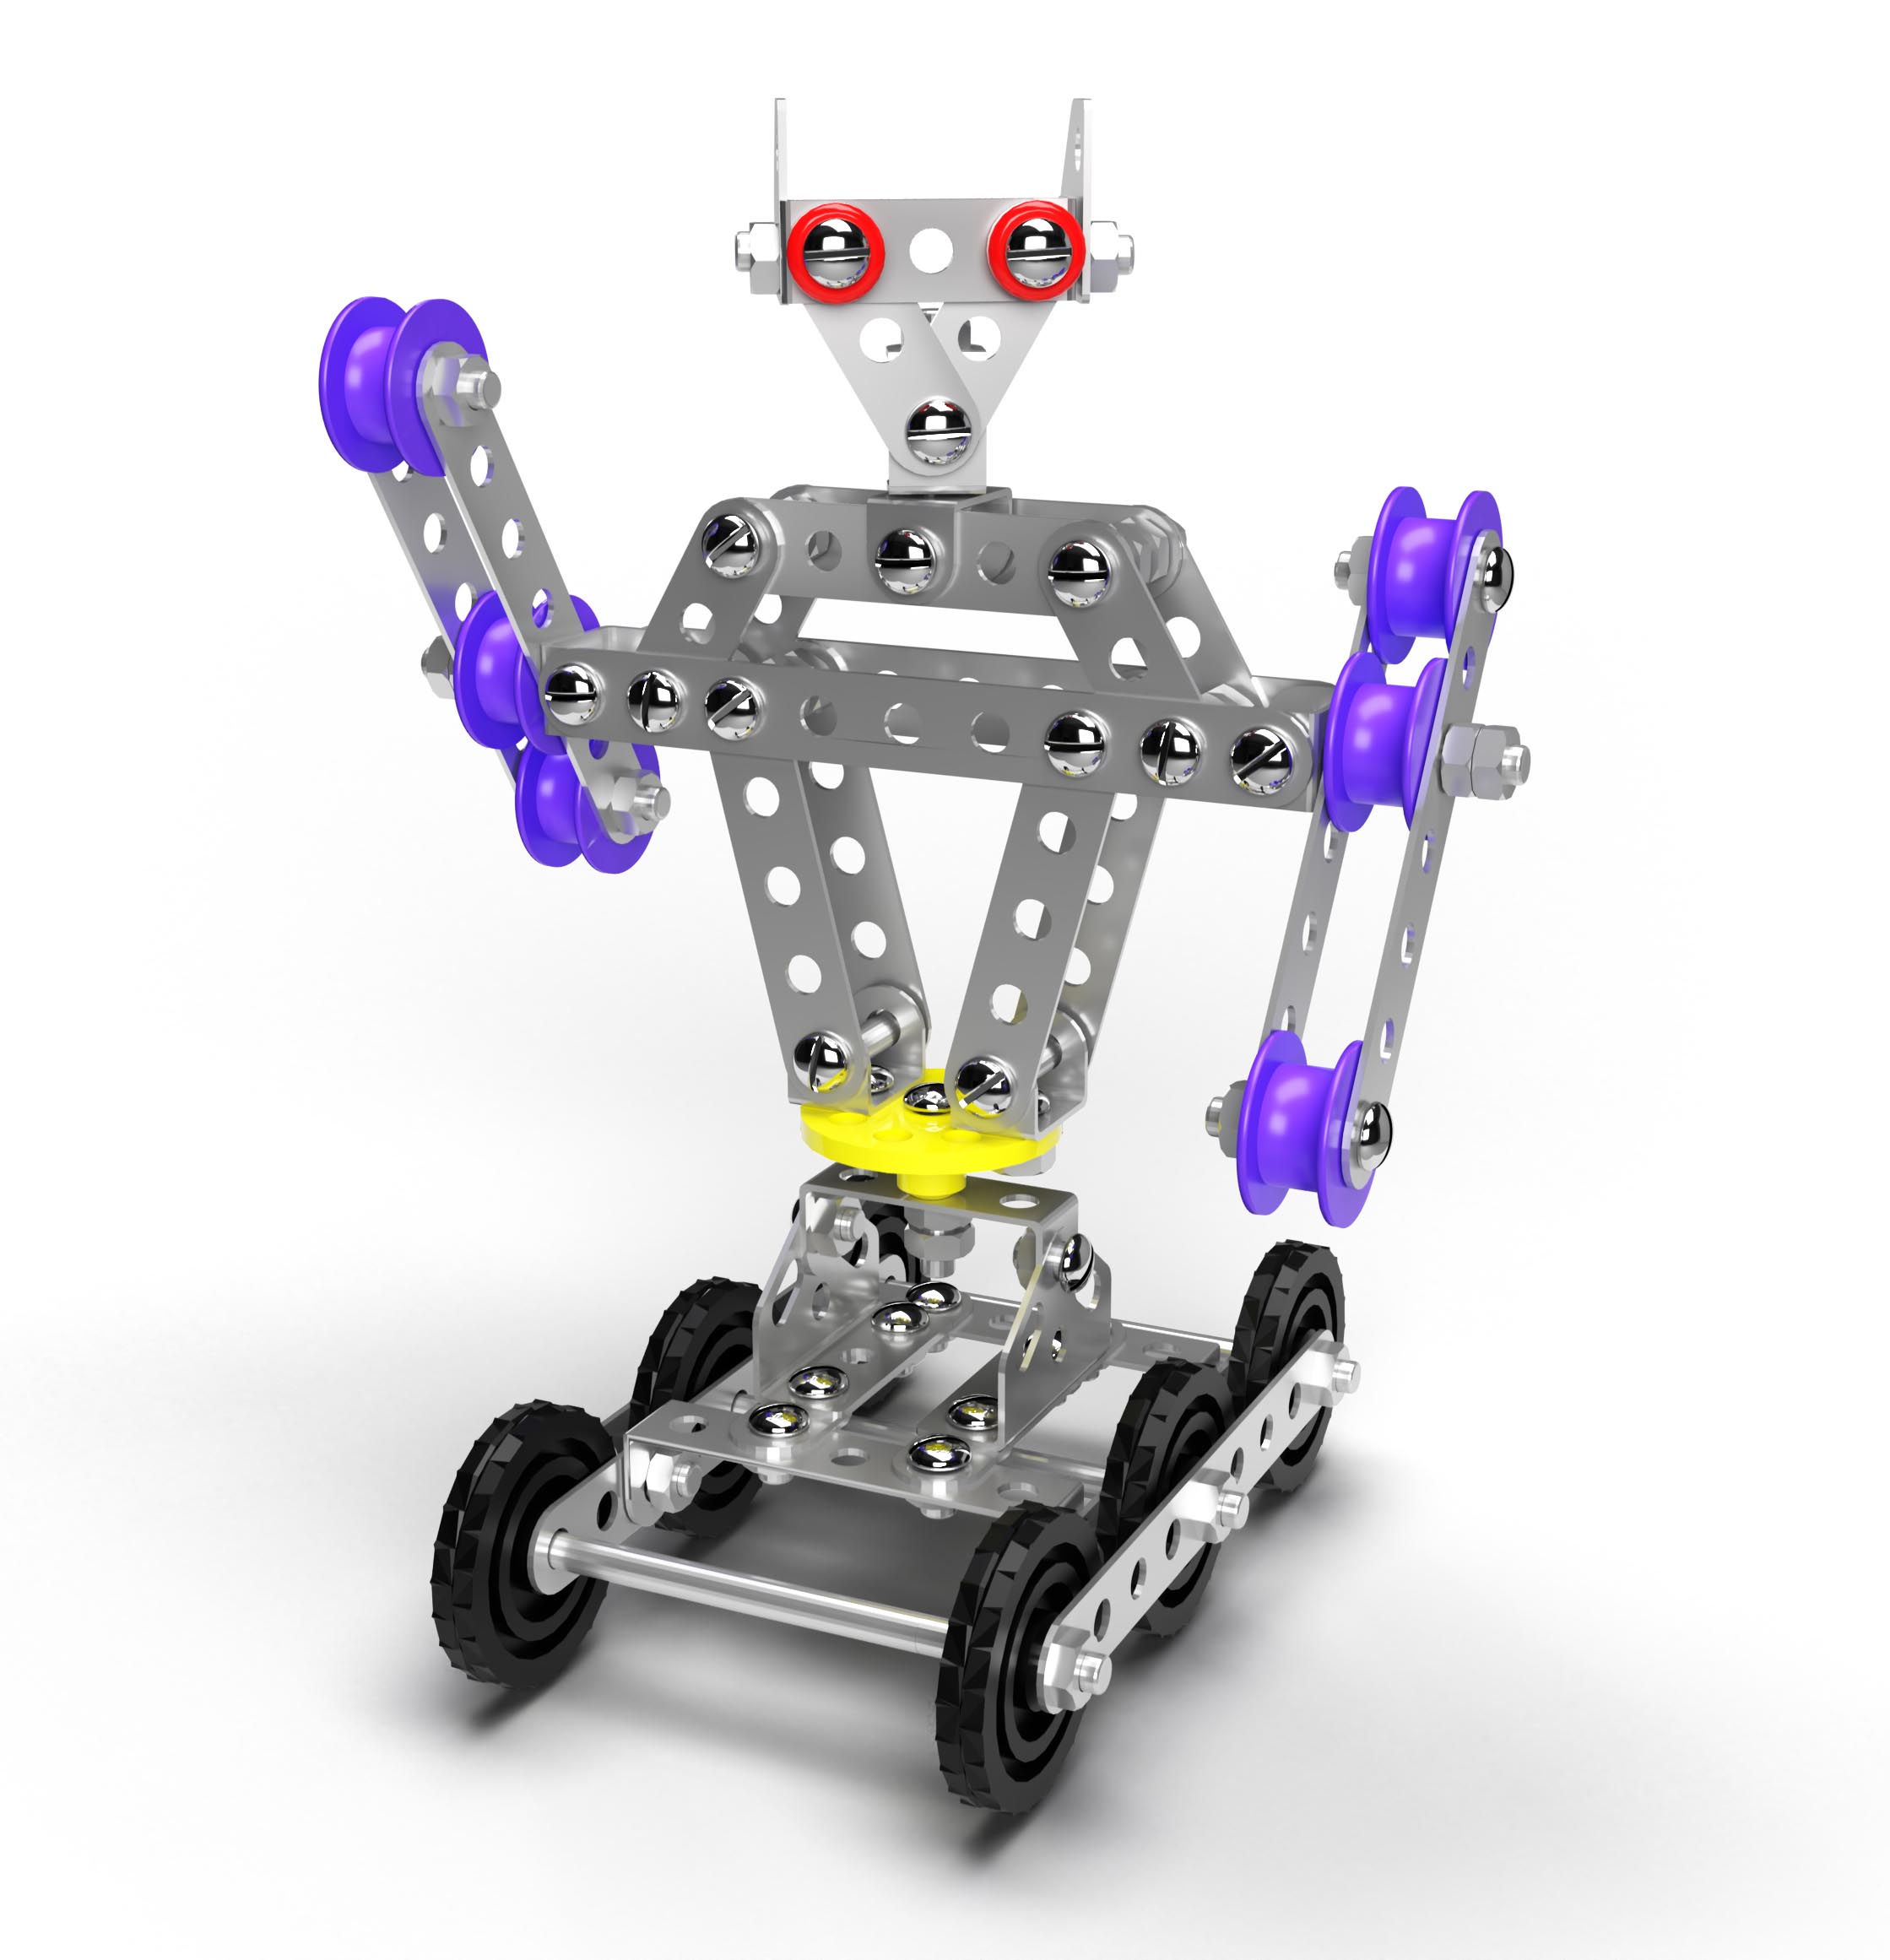 Конструктор металлический с подвижными деталями - Робот Р2  